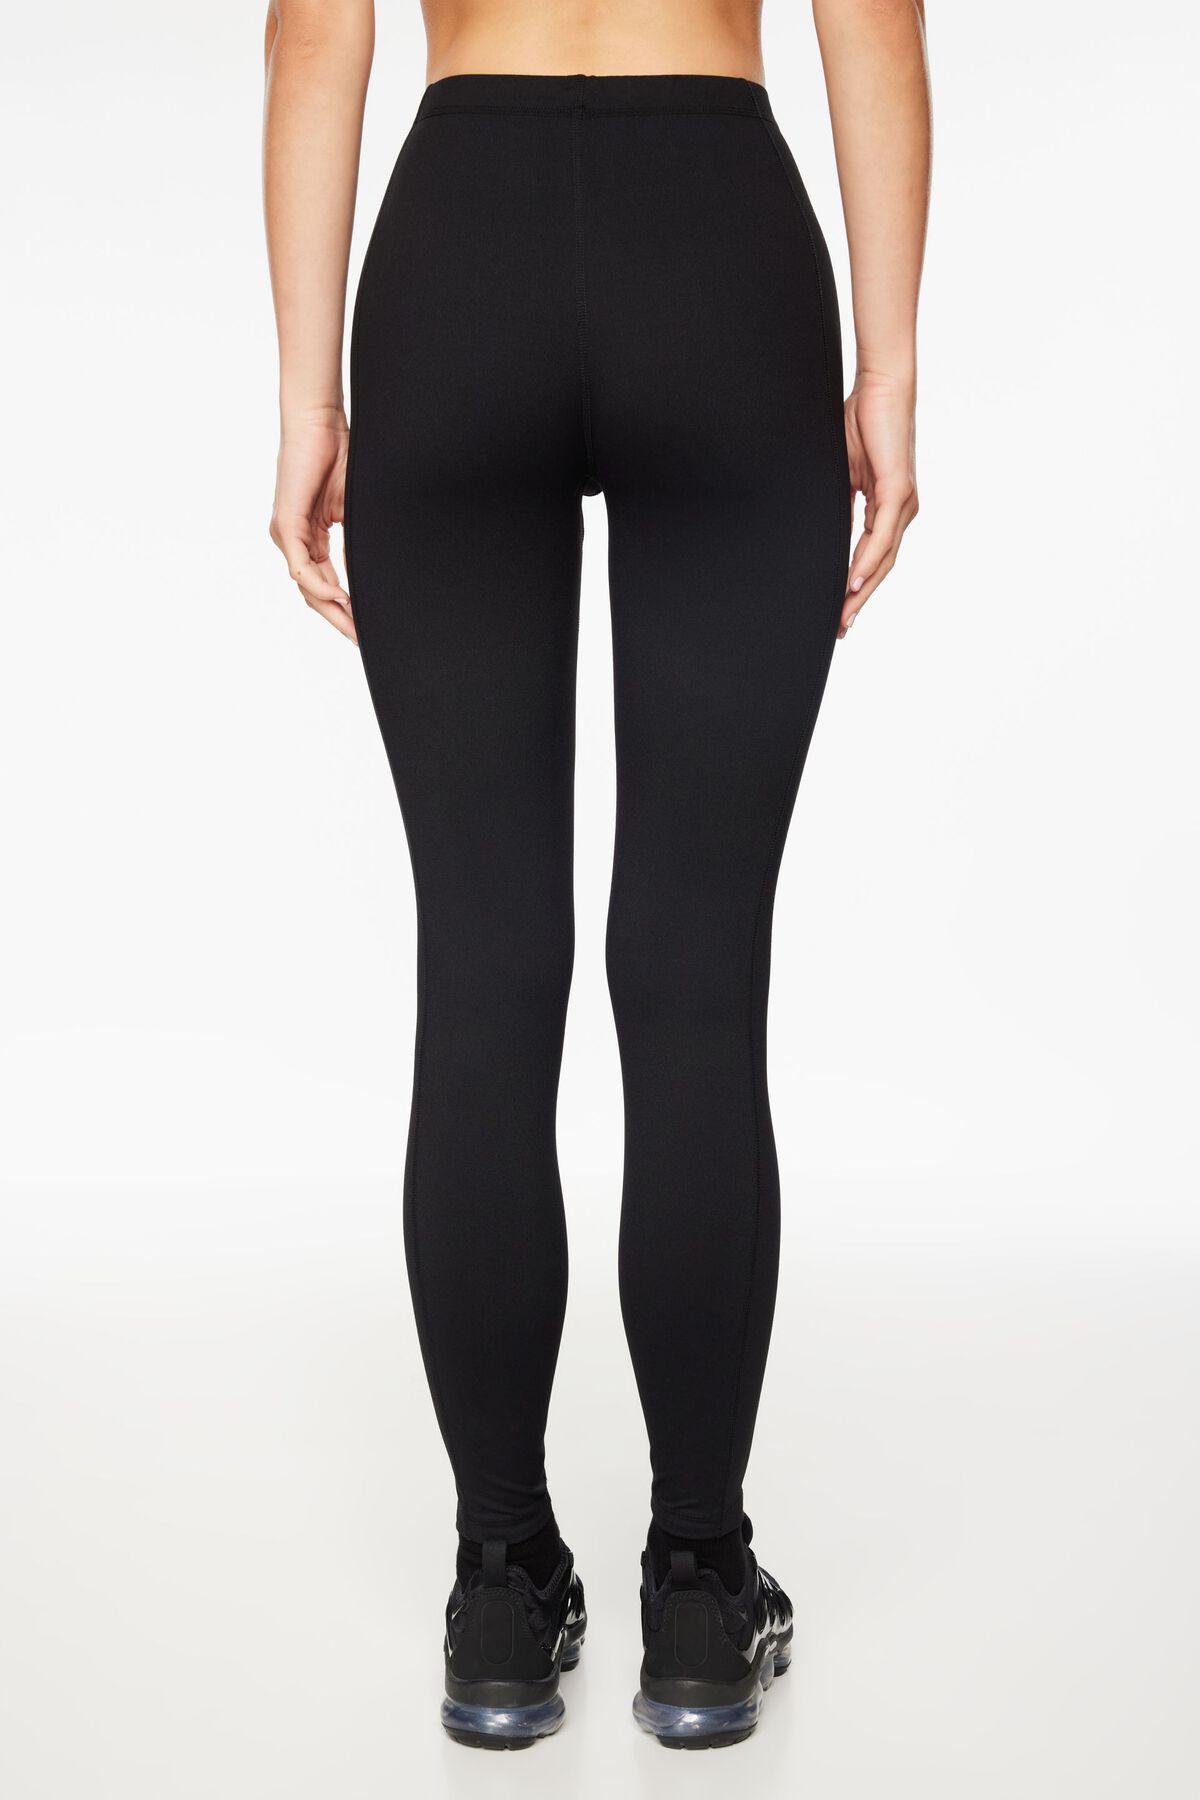 High-waisted long-ribbed leggings VIKI BLACK – Women's leggings at